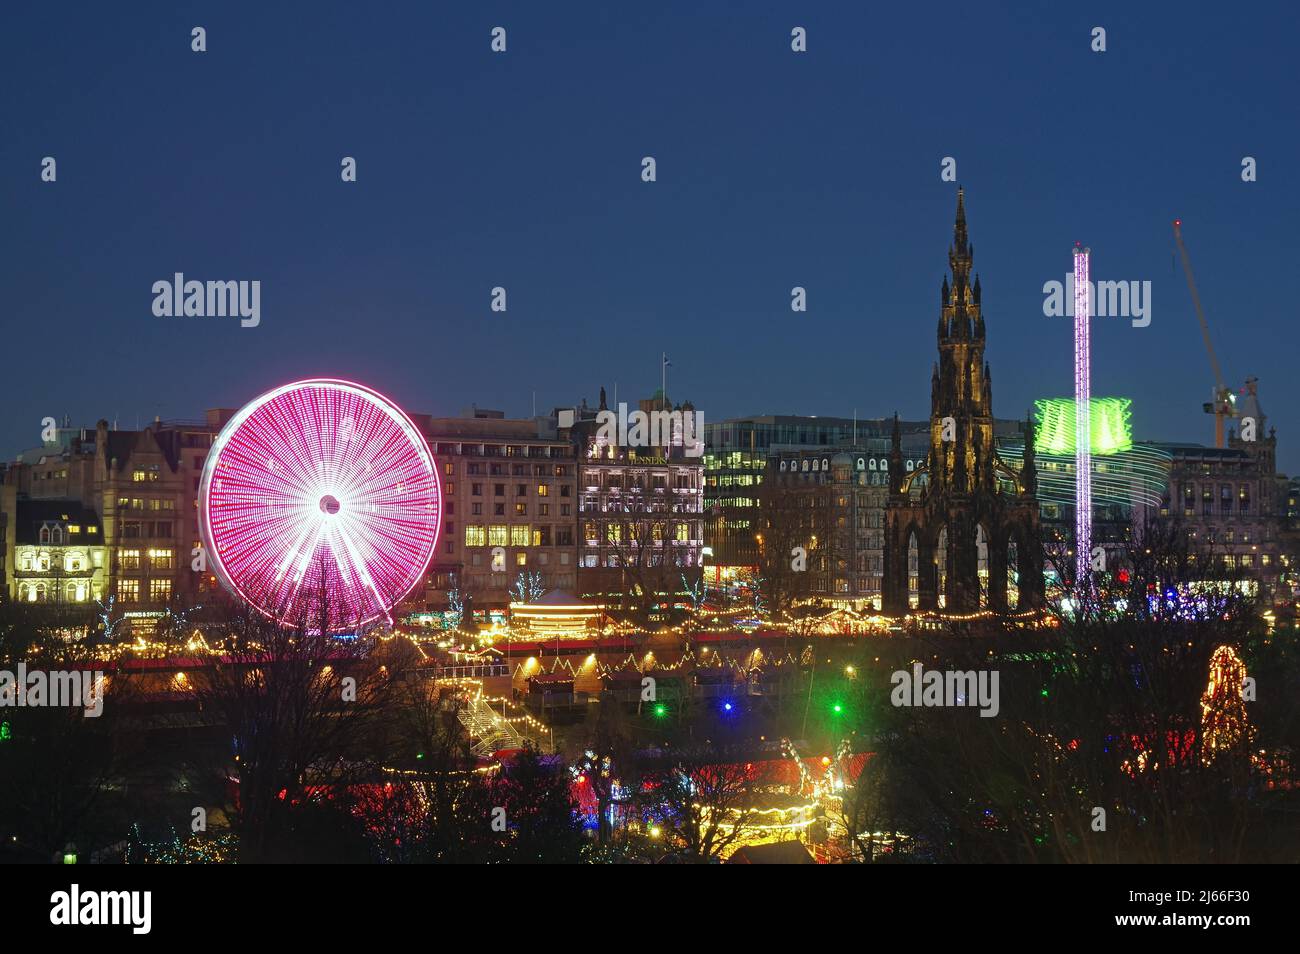 Weihnachtsmarkt, Riesenrad und Sir Walter Scott Memorial, Nachtaufnahme, Edinburgh, Schottland, Grossbritannien Stock Photo